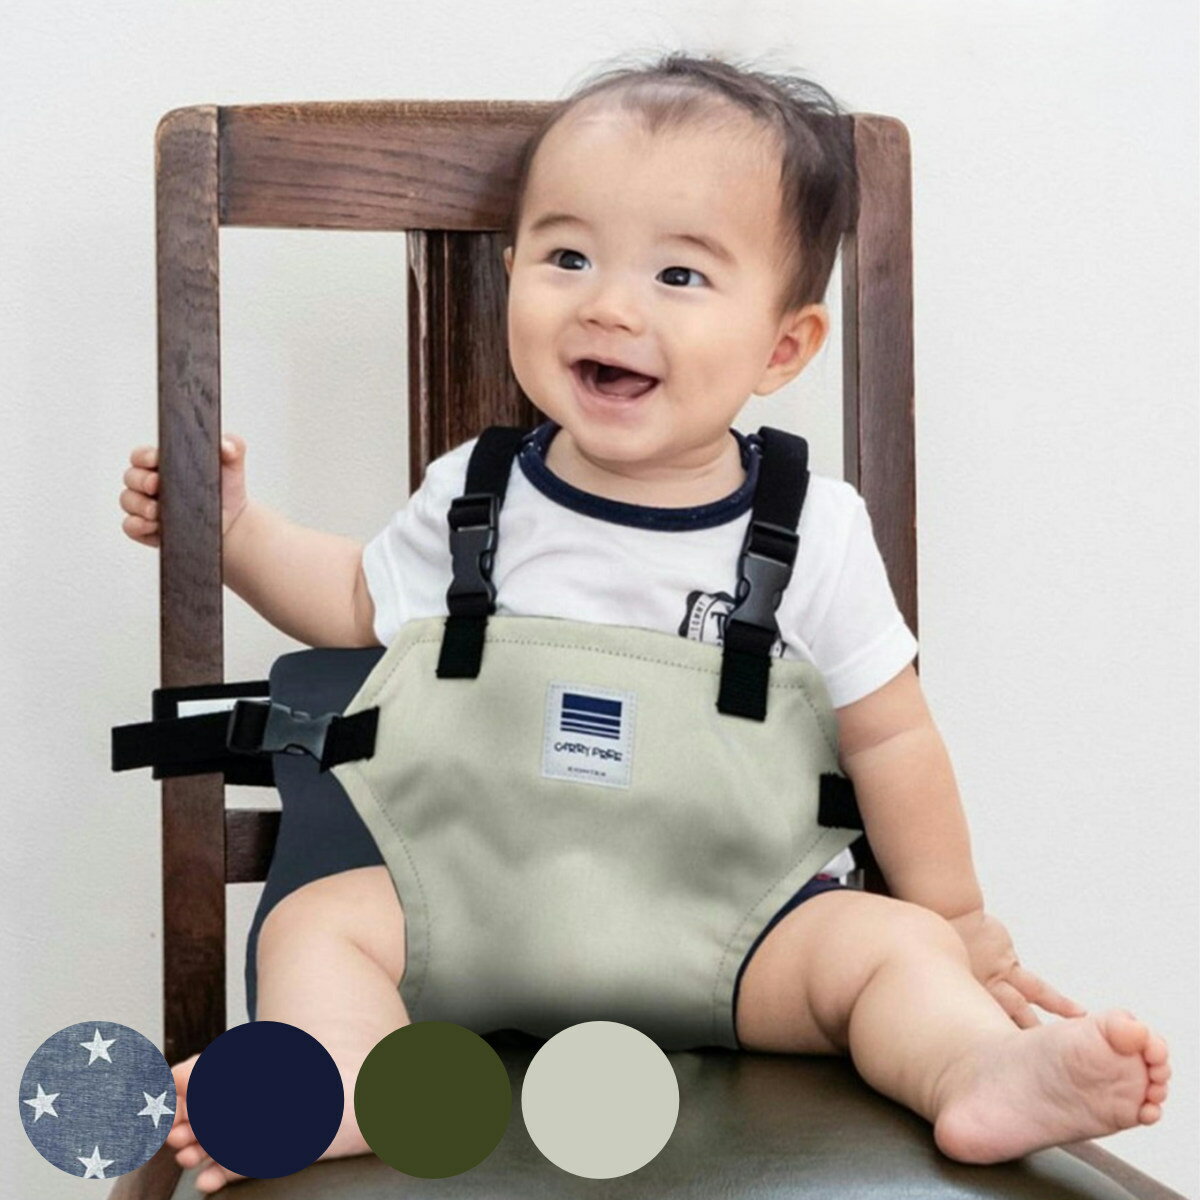 チェアベルト ホールド キャリフリー 日本正規品 赤ちゃん 椅子 日本製 チェアーベルト 補助ベルト チェアシート ベルト ベビー 子ども キッズ サポートベルト 腰ベルト コンパクト 固定 転倒…